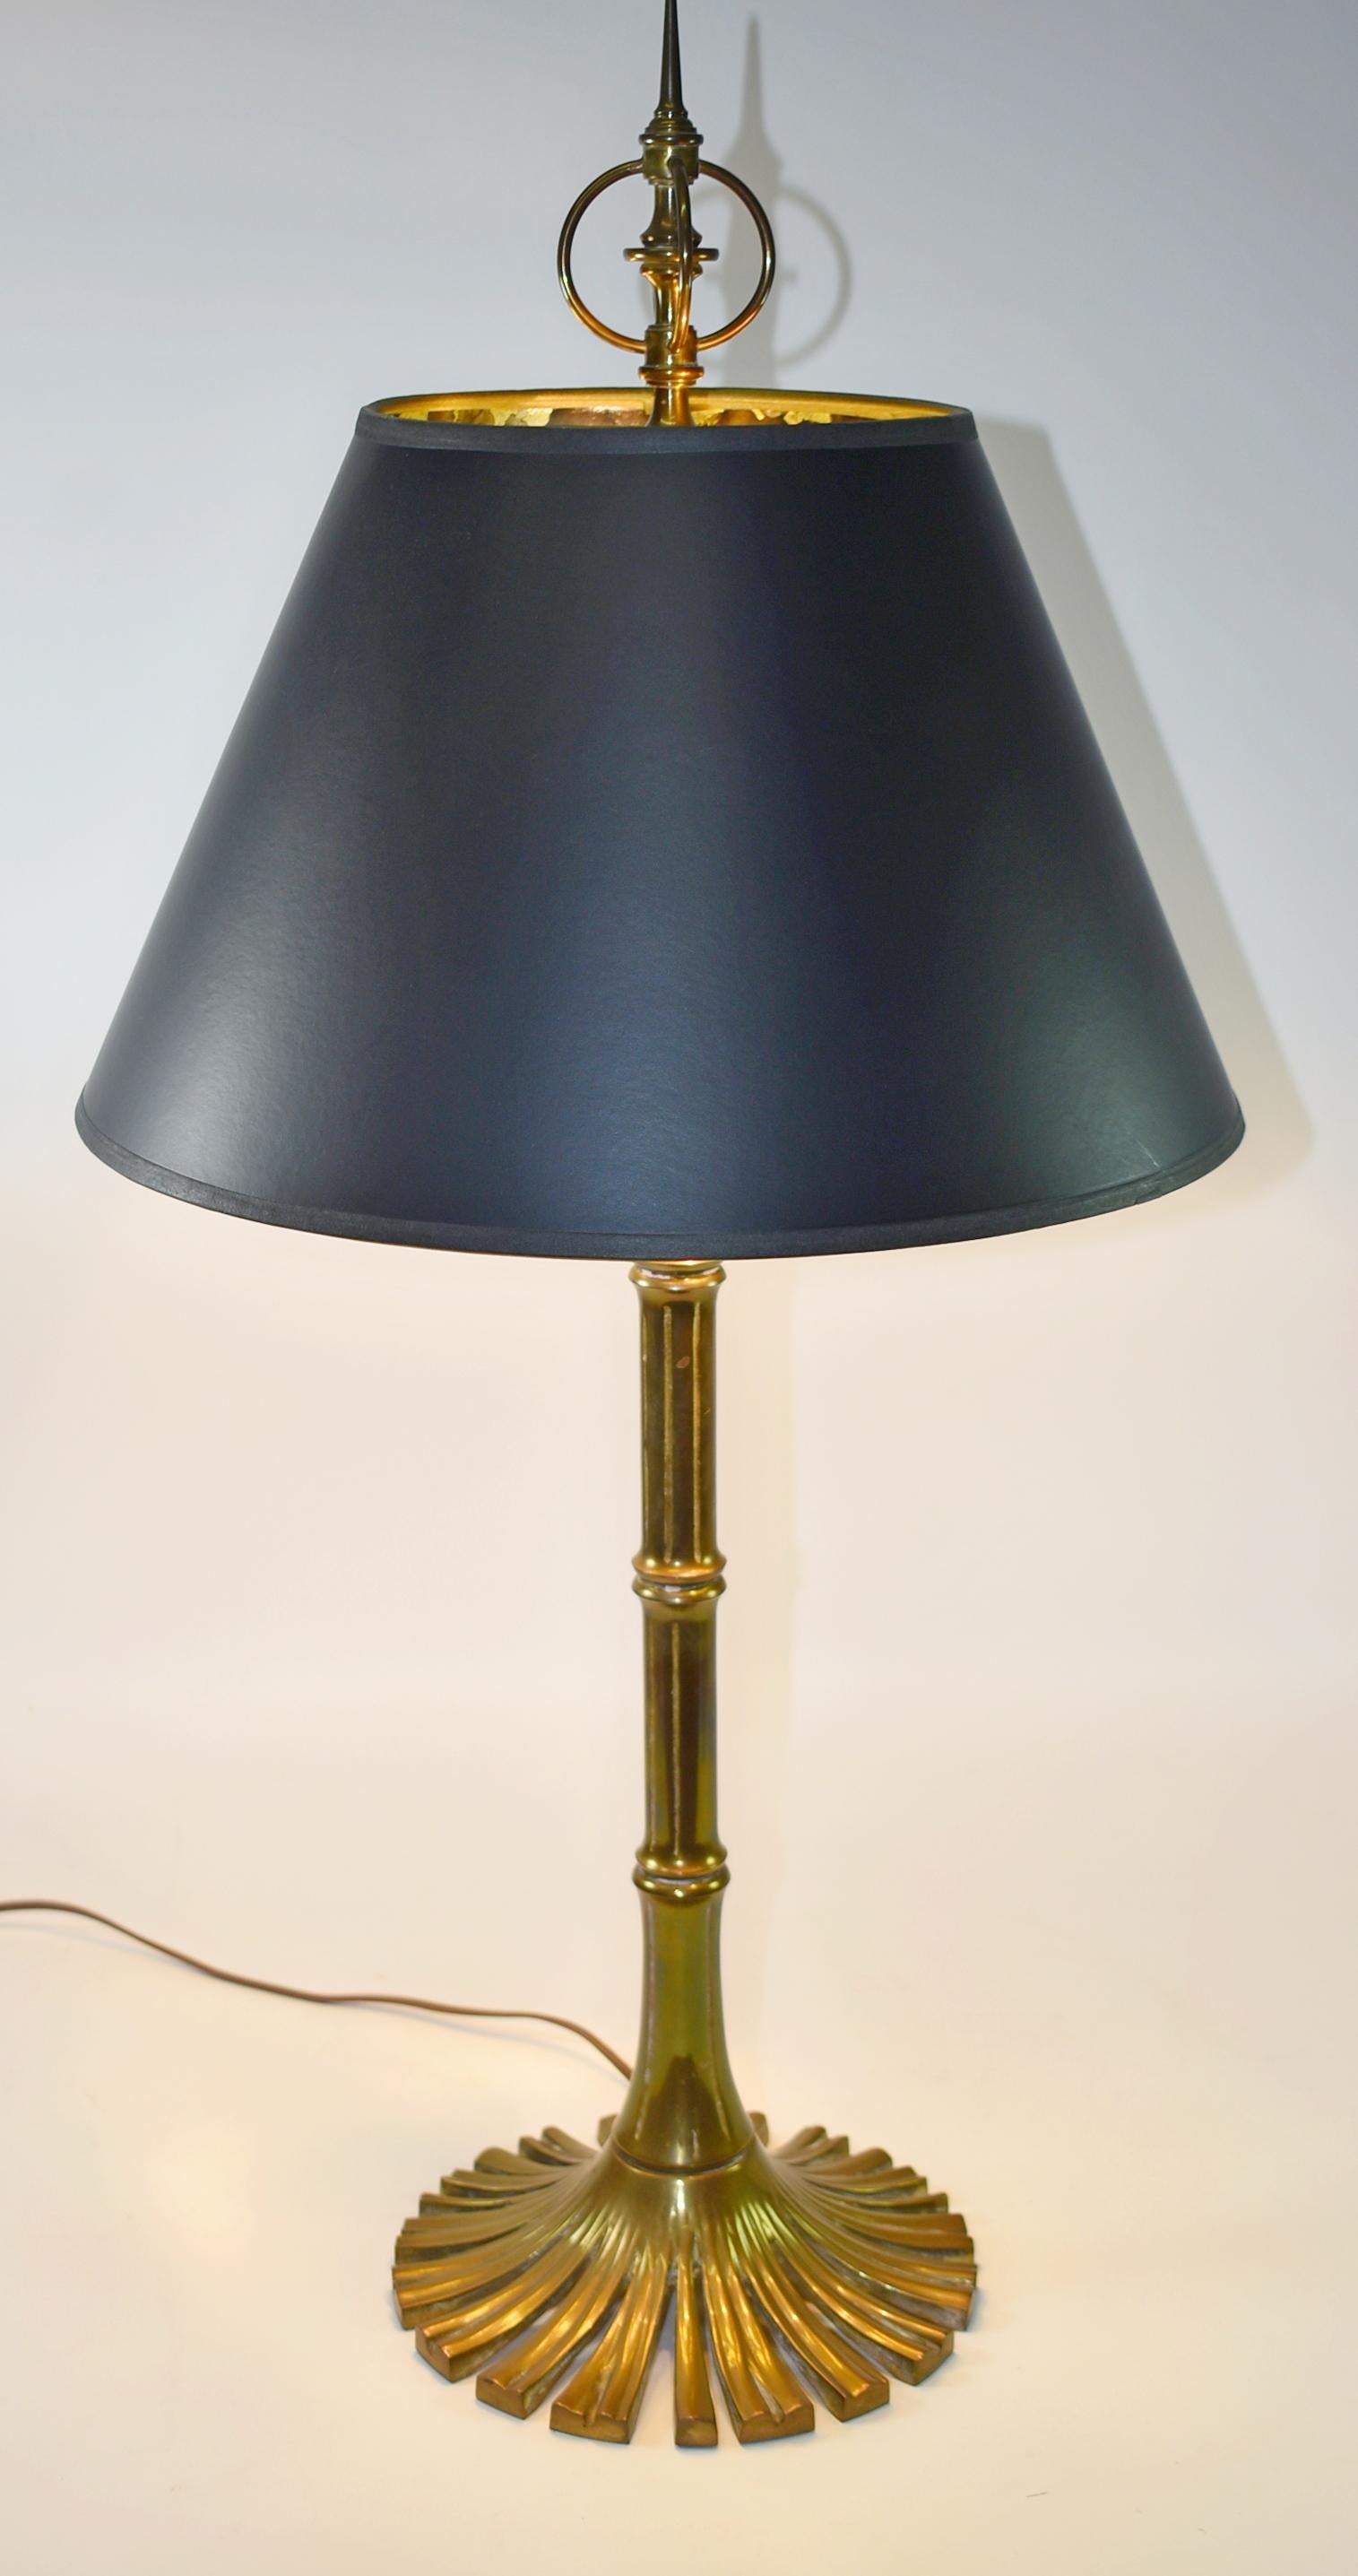 Chapman Messing-Bambus-Tischlampe, CIRCA 1976. Lampe aus Messingguss mit Details aus Bambus. Die Basis ist ein fächerförmiger Kreis aus Schilf. Zwei originale Steckdosen mit Etiketten aus dem Jahr 1976 mit Zugketten. Kommt mit 14 